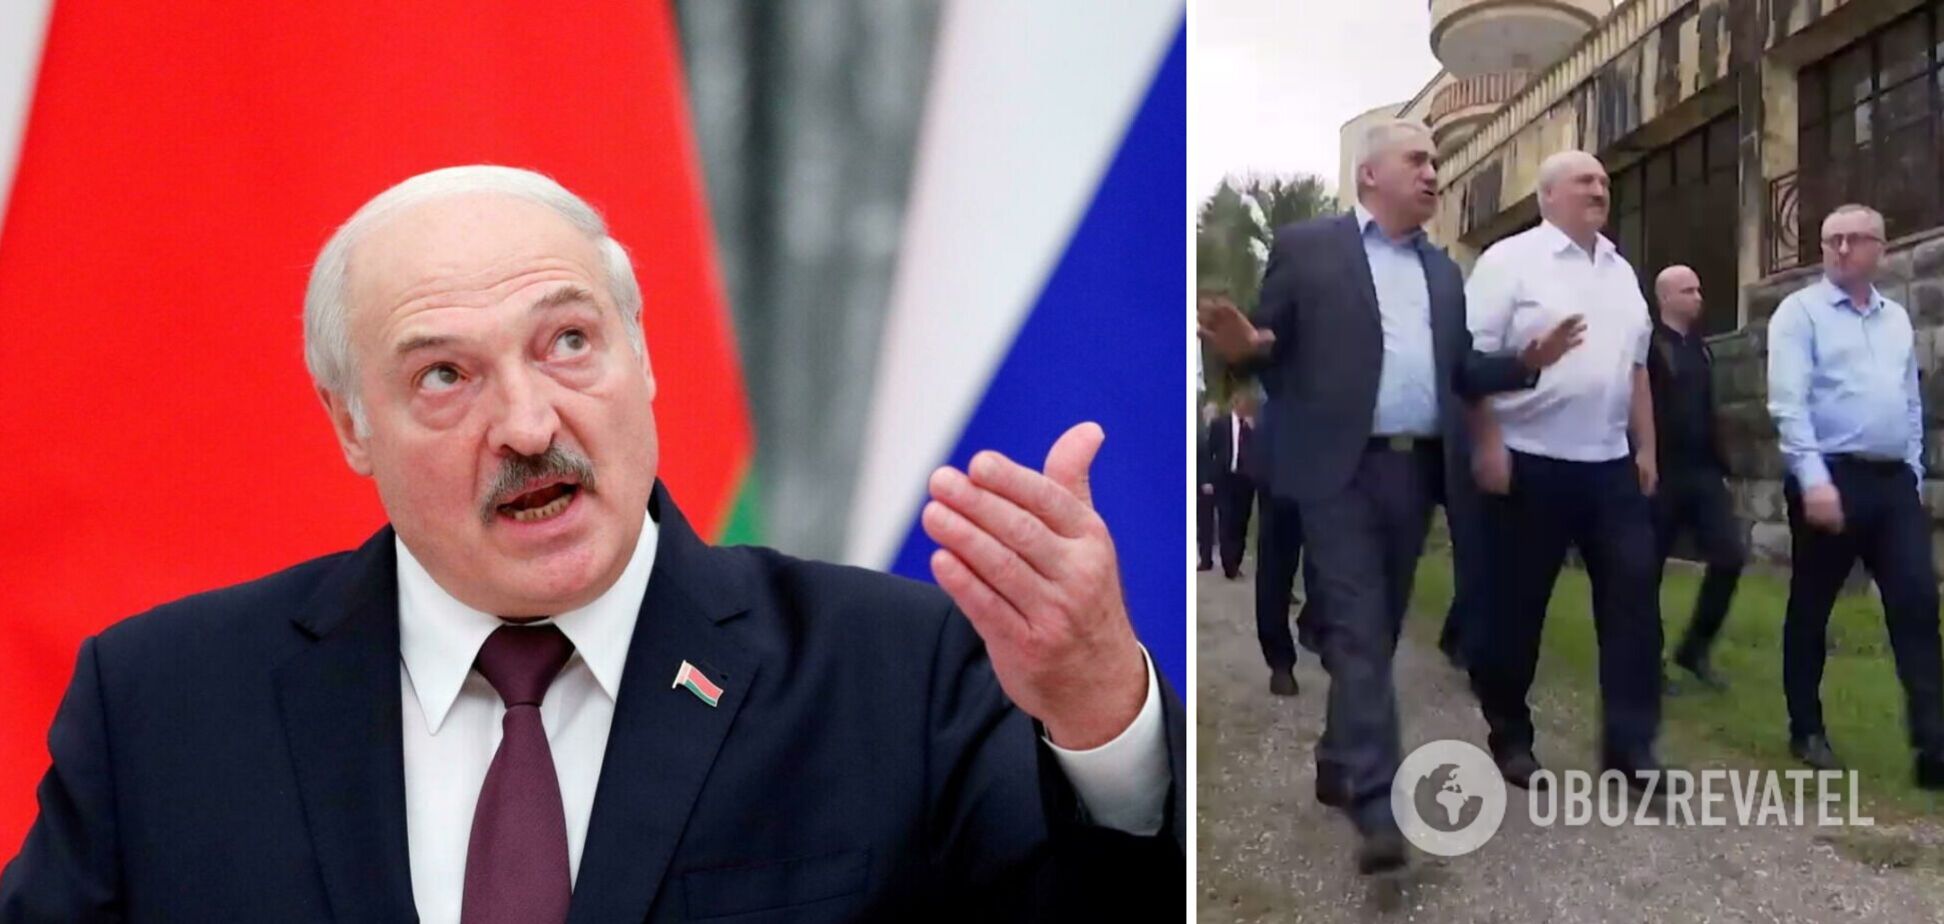 Лукашенко признал независимость самопровозглашенной Абхазии своим визитом в Пицунду: в Грузии потребовали объяснений